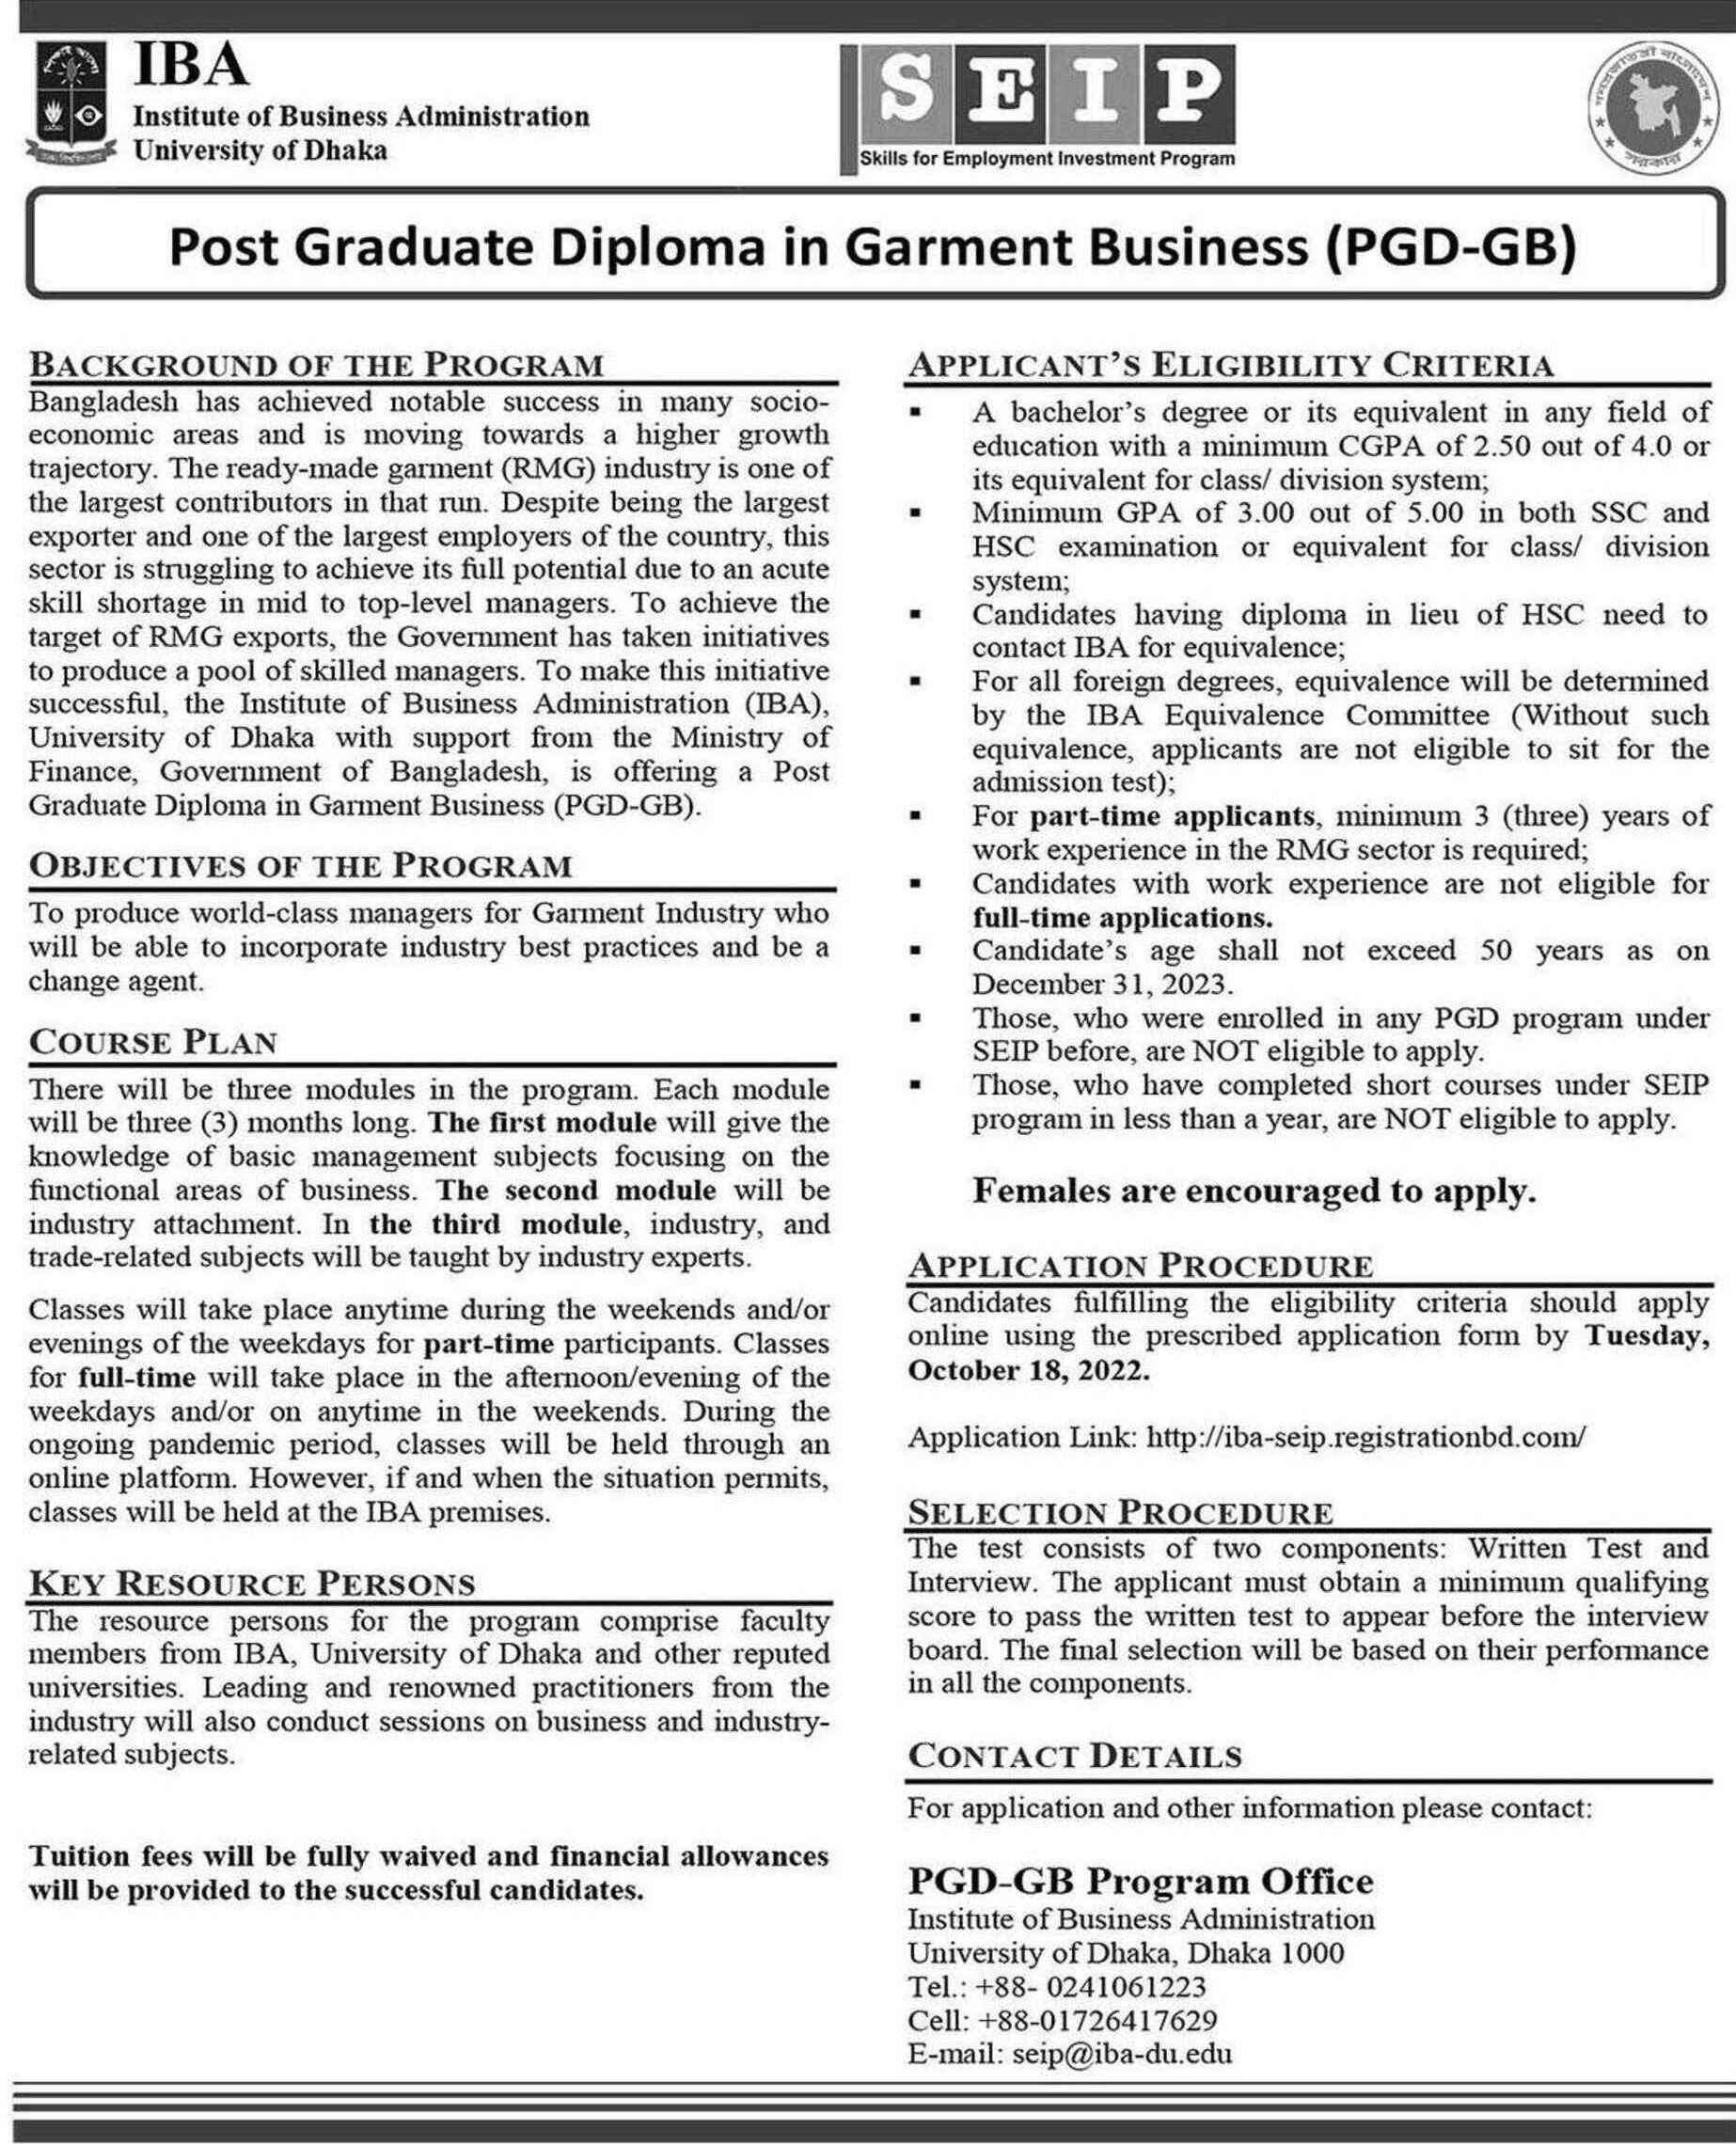 Free Post Graduate Diploma in Garment Business